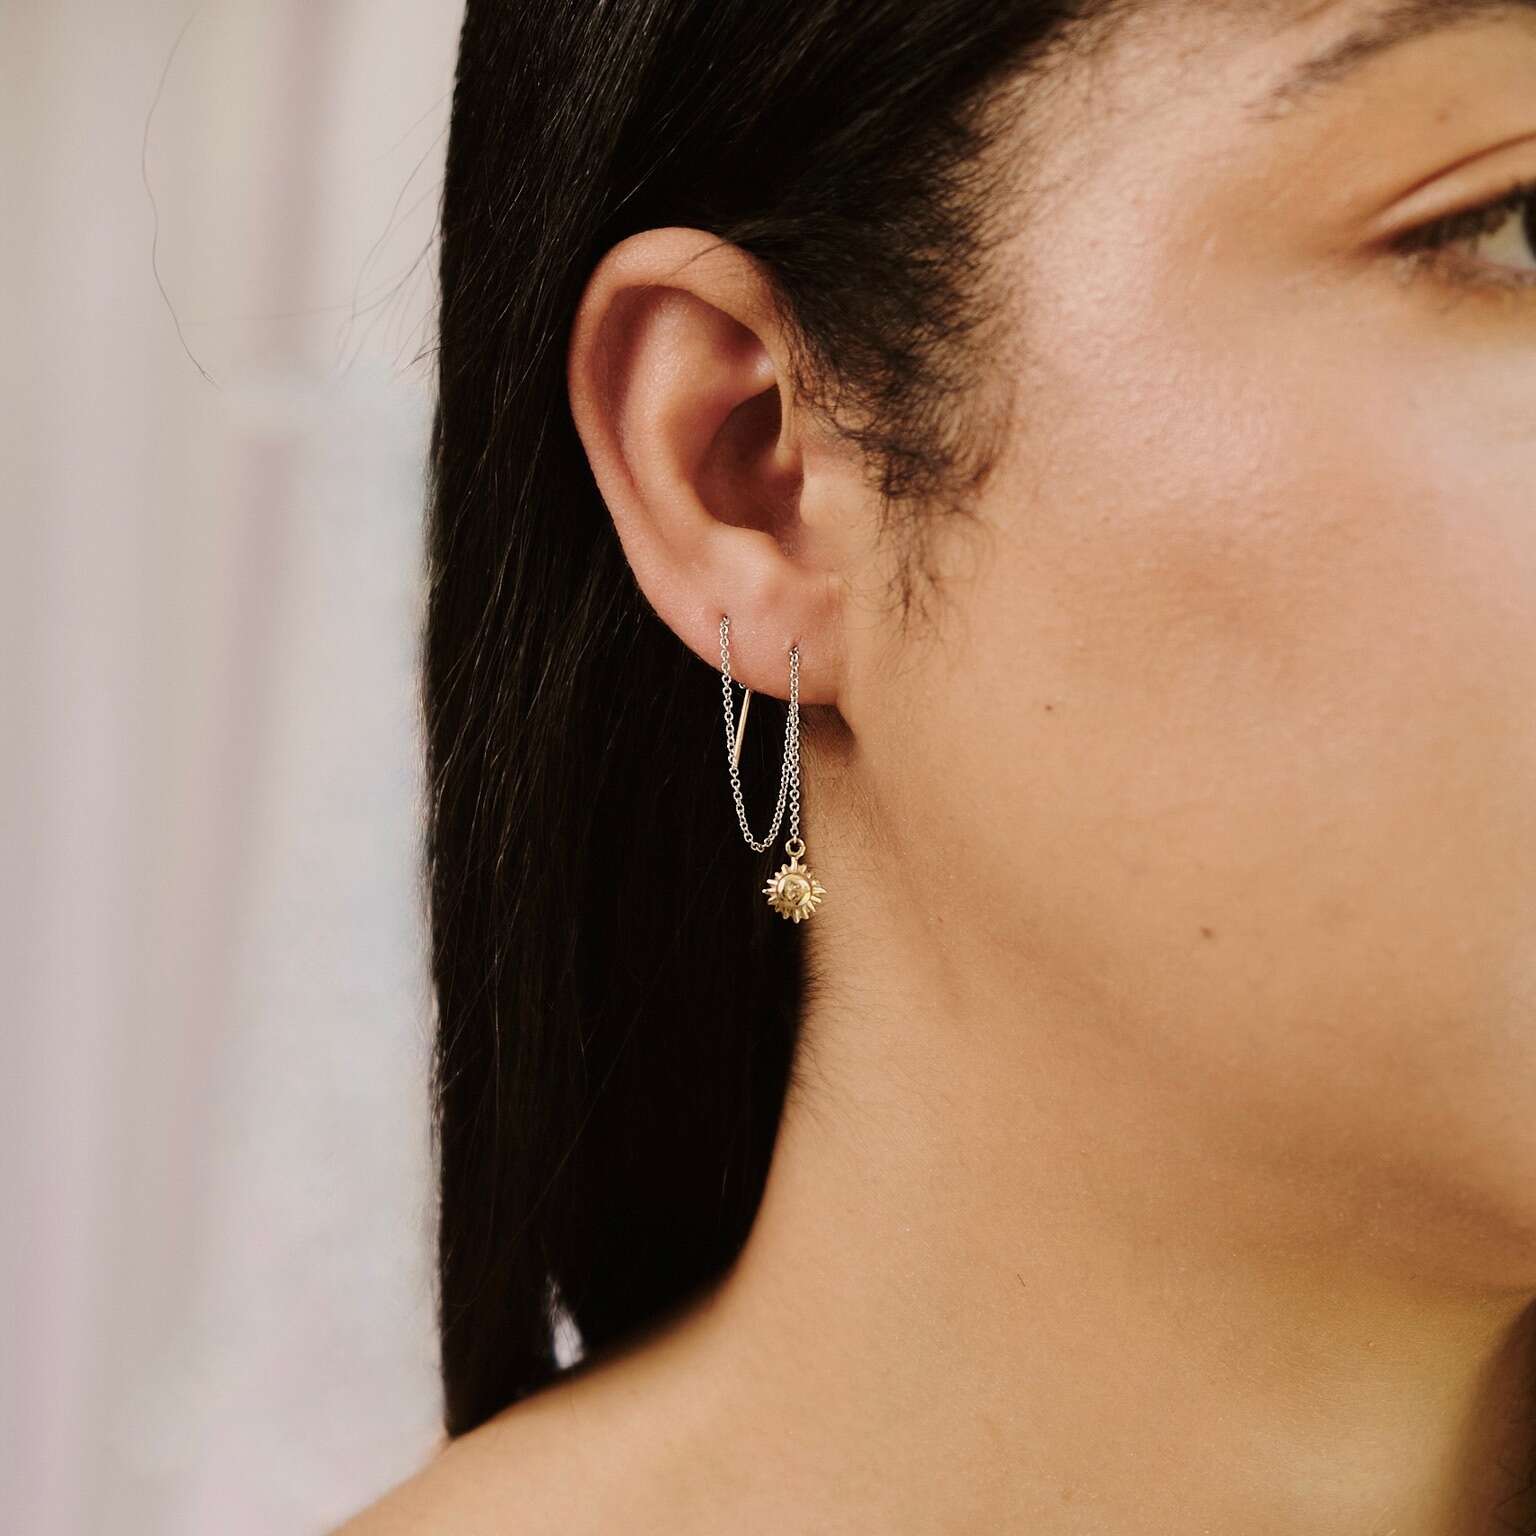 SUN THREADER EARRINGS, earrings, chain earrings, gold earrings, drop earrings, Danielle Camera Jewellery